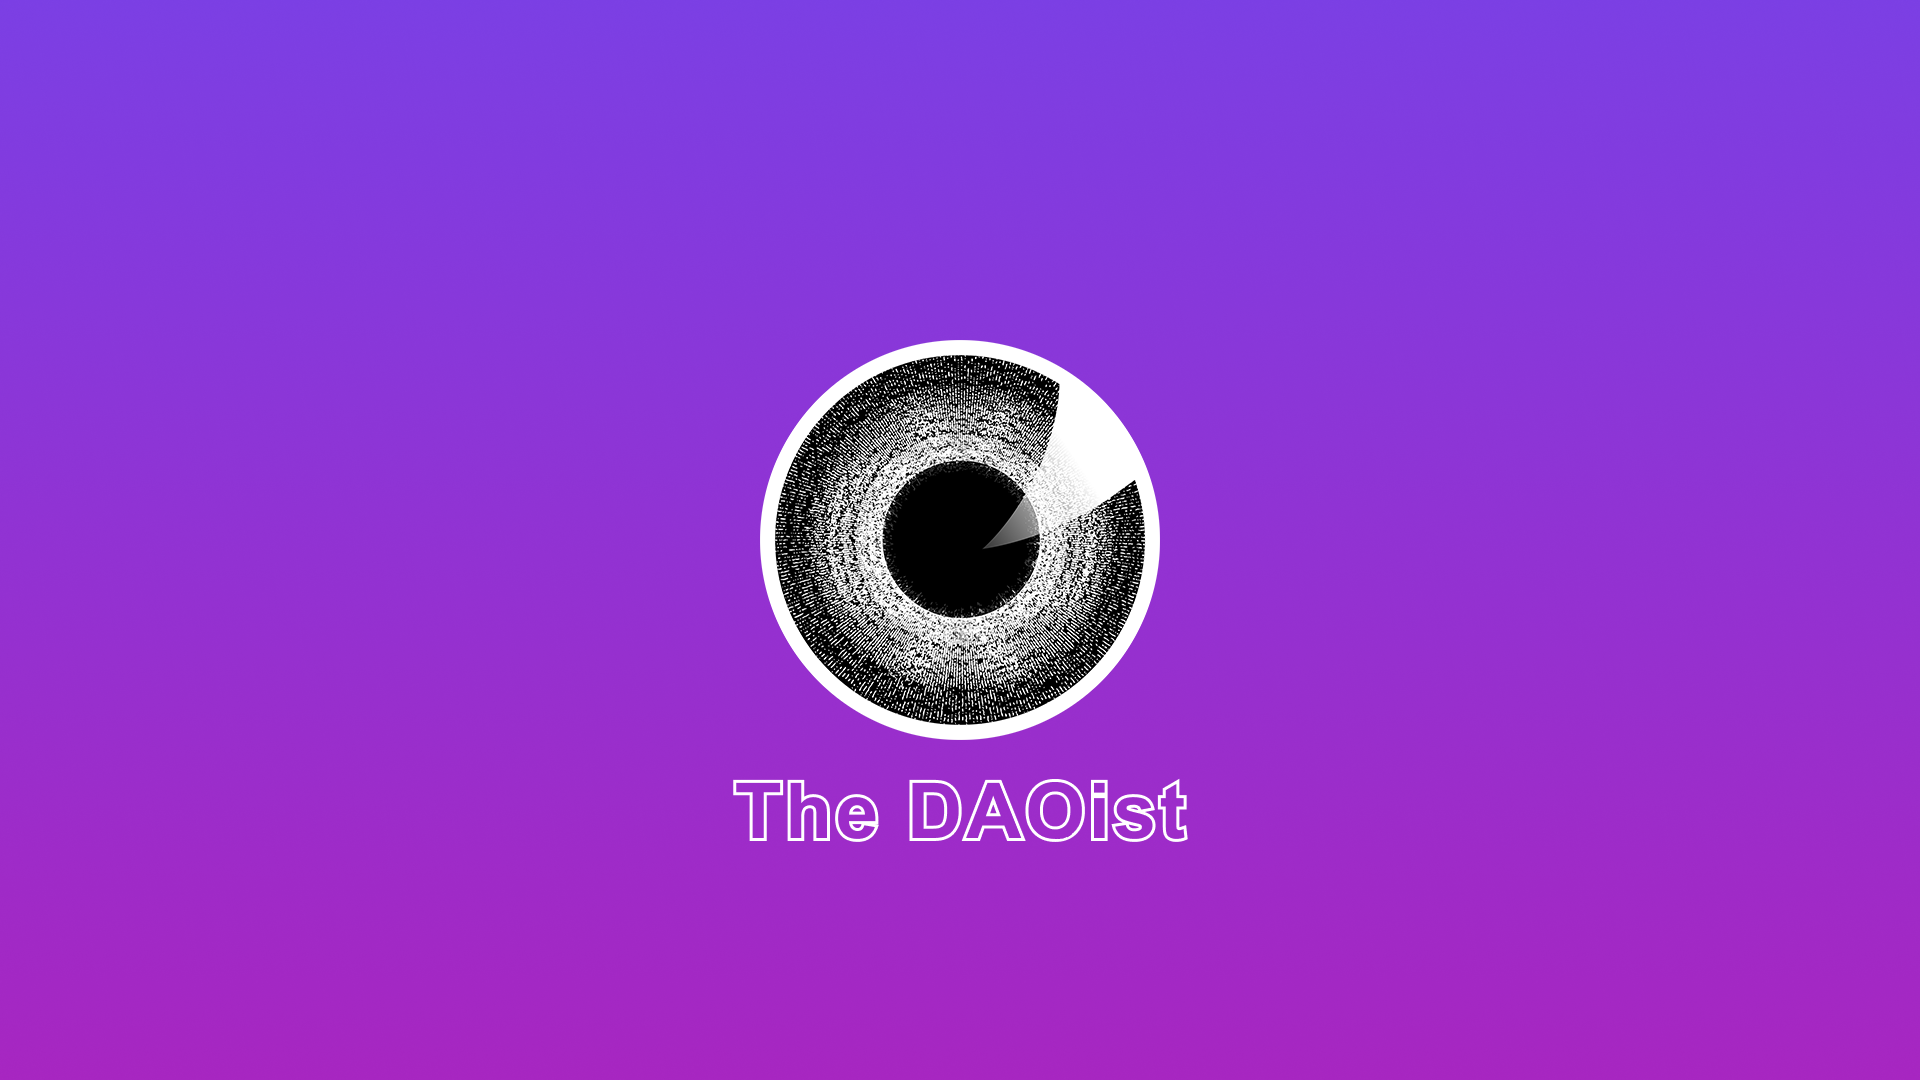 The DAOist - Ethcc